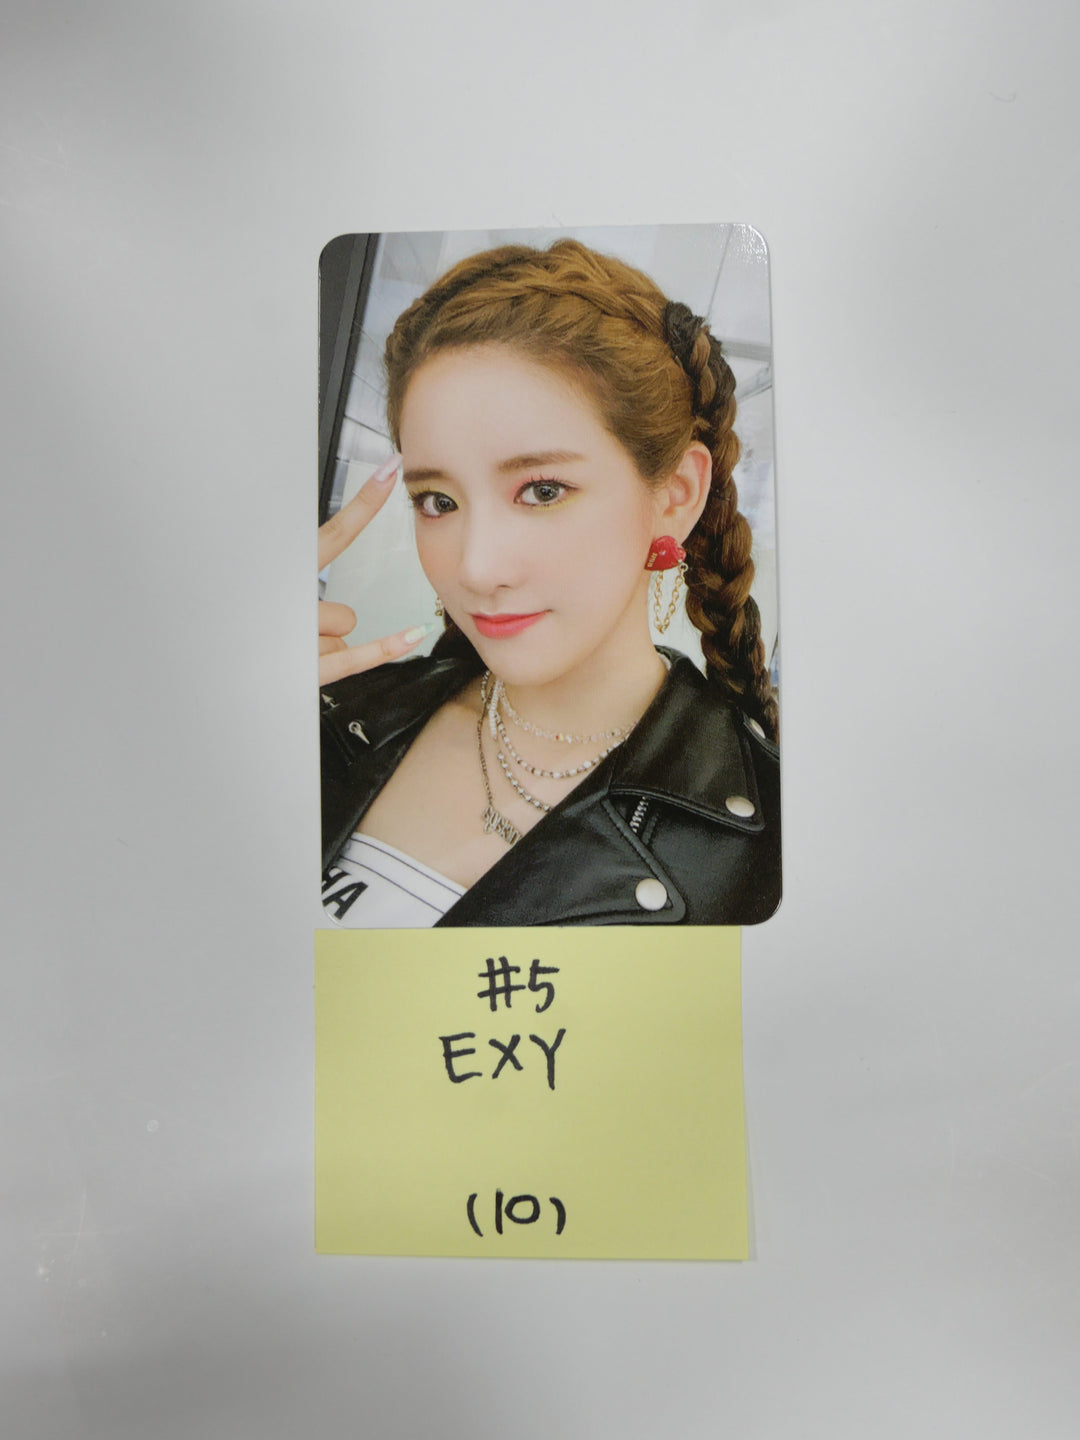 우주소녀 더 블랙 "My Attitude" - 공식 포토카드 &amp; 북마크